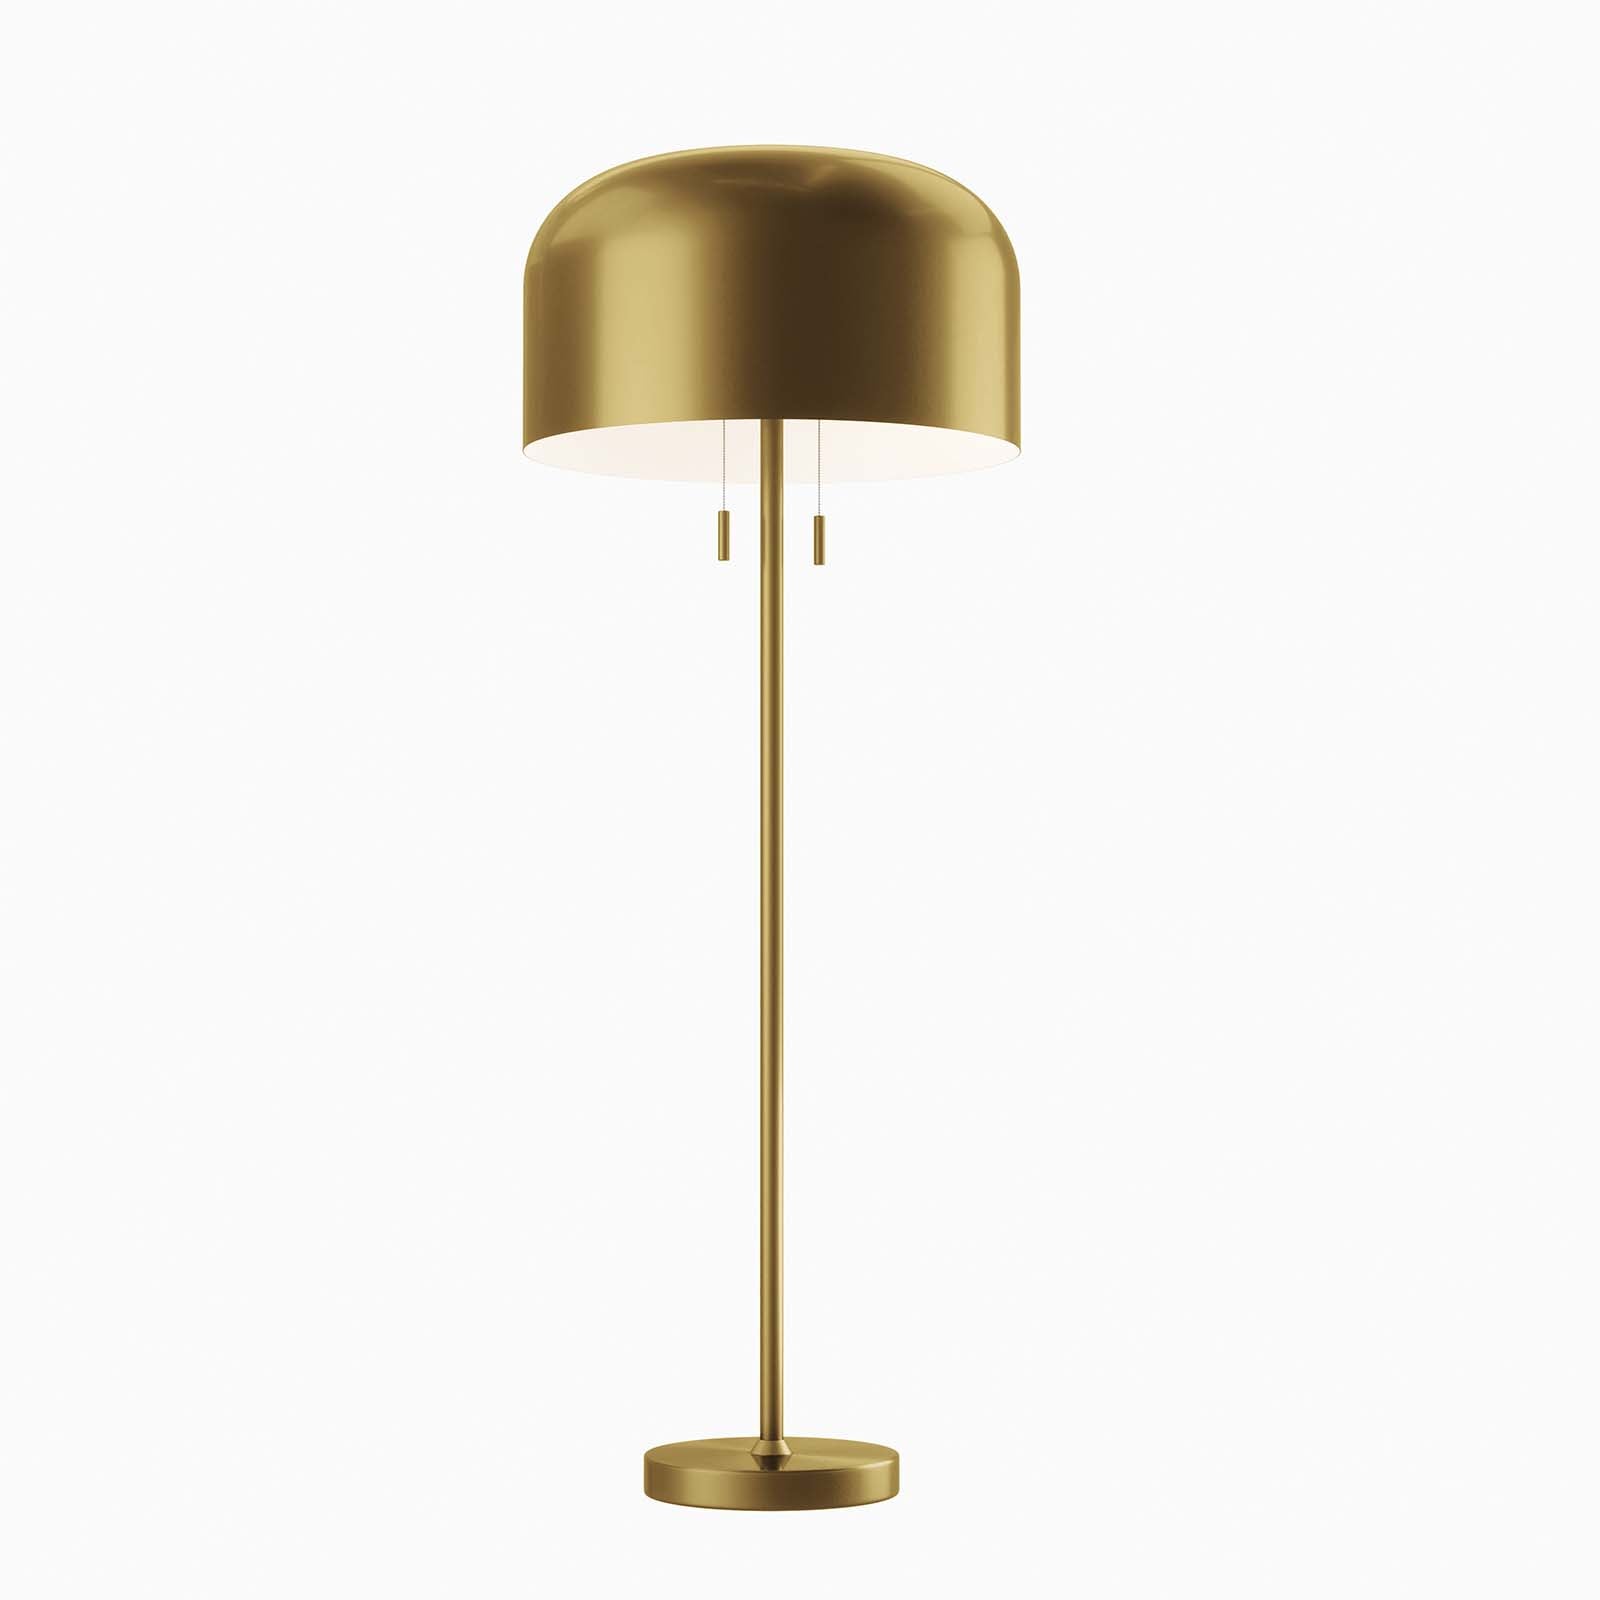 Modway Floor Lamps - Avenue Floor Lamp Satin Brass